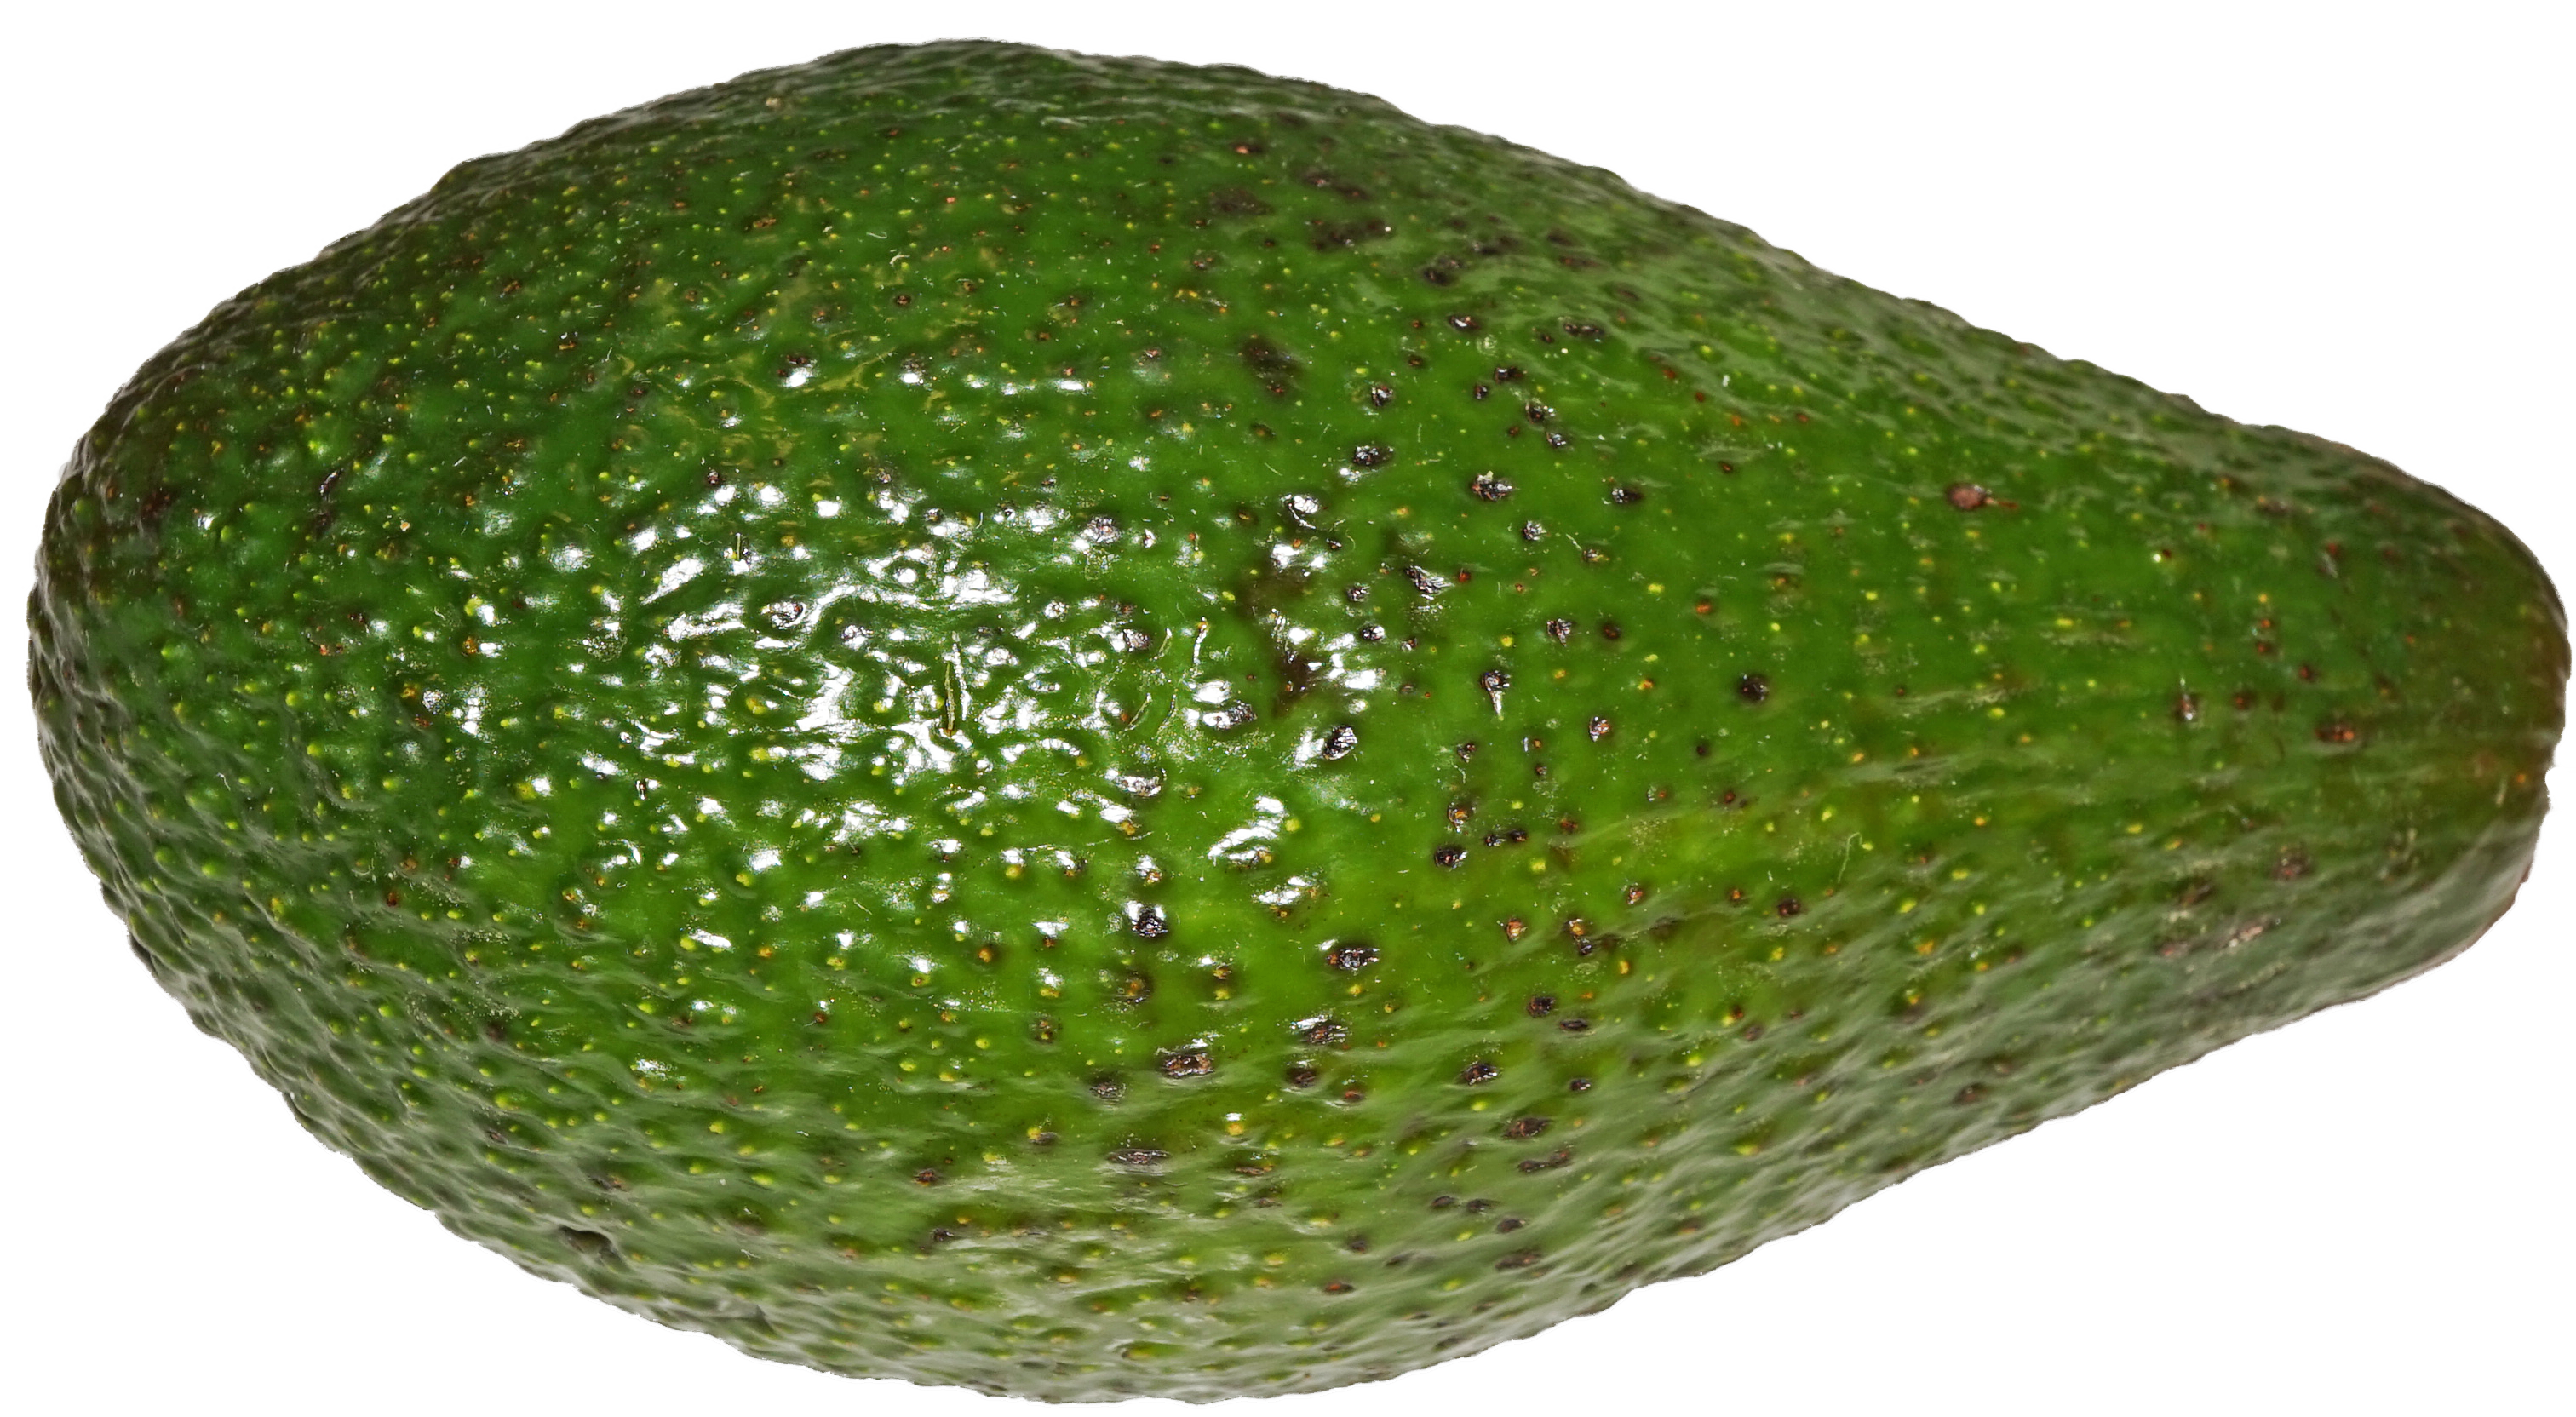 hd transparent avocado image #23688